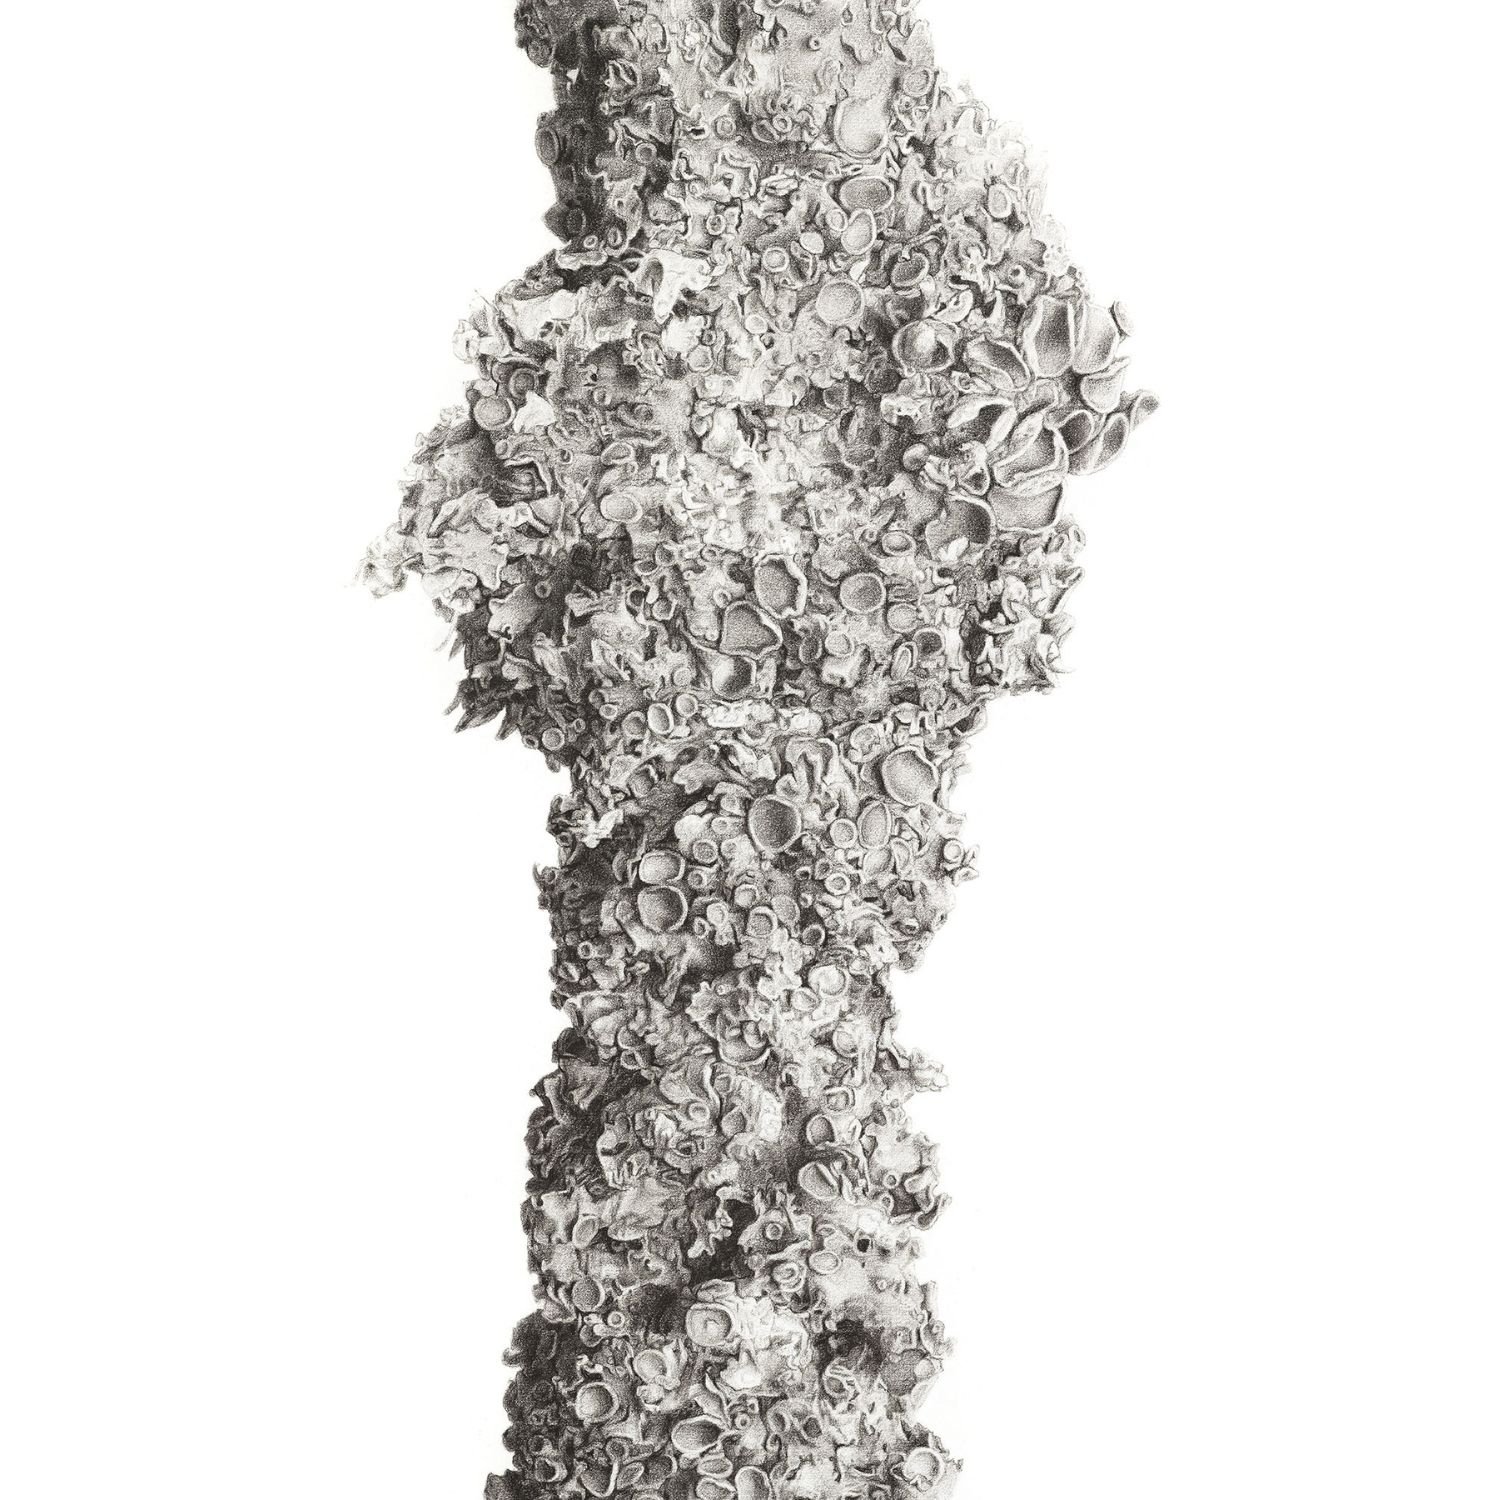 Cluster – Xanthoria sp.